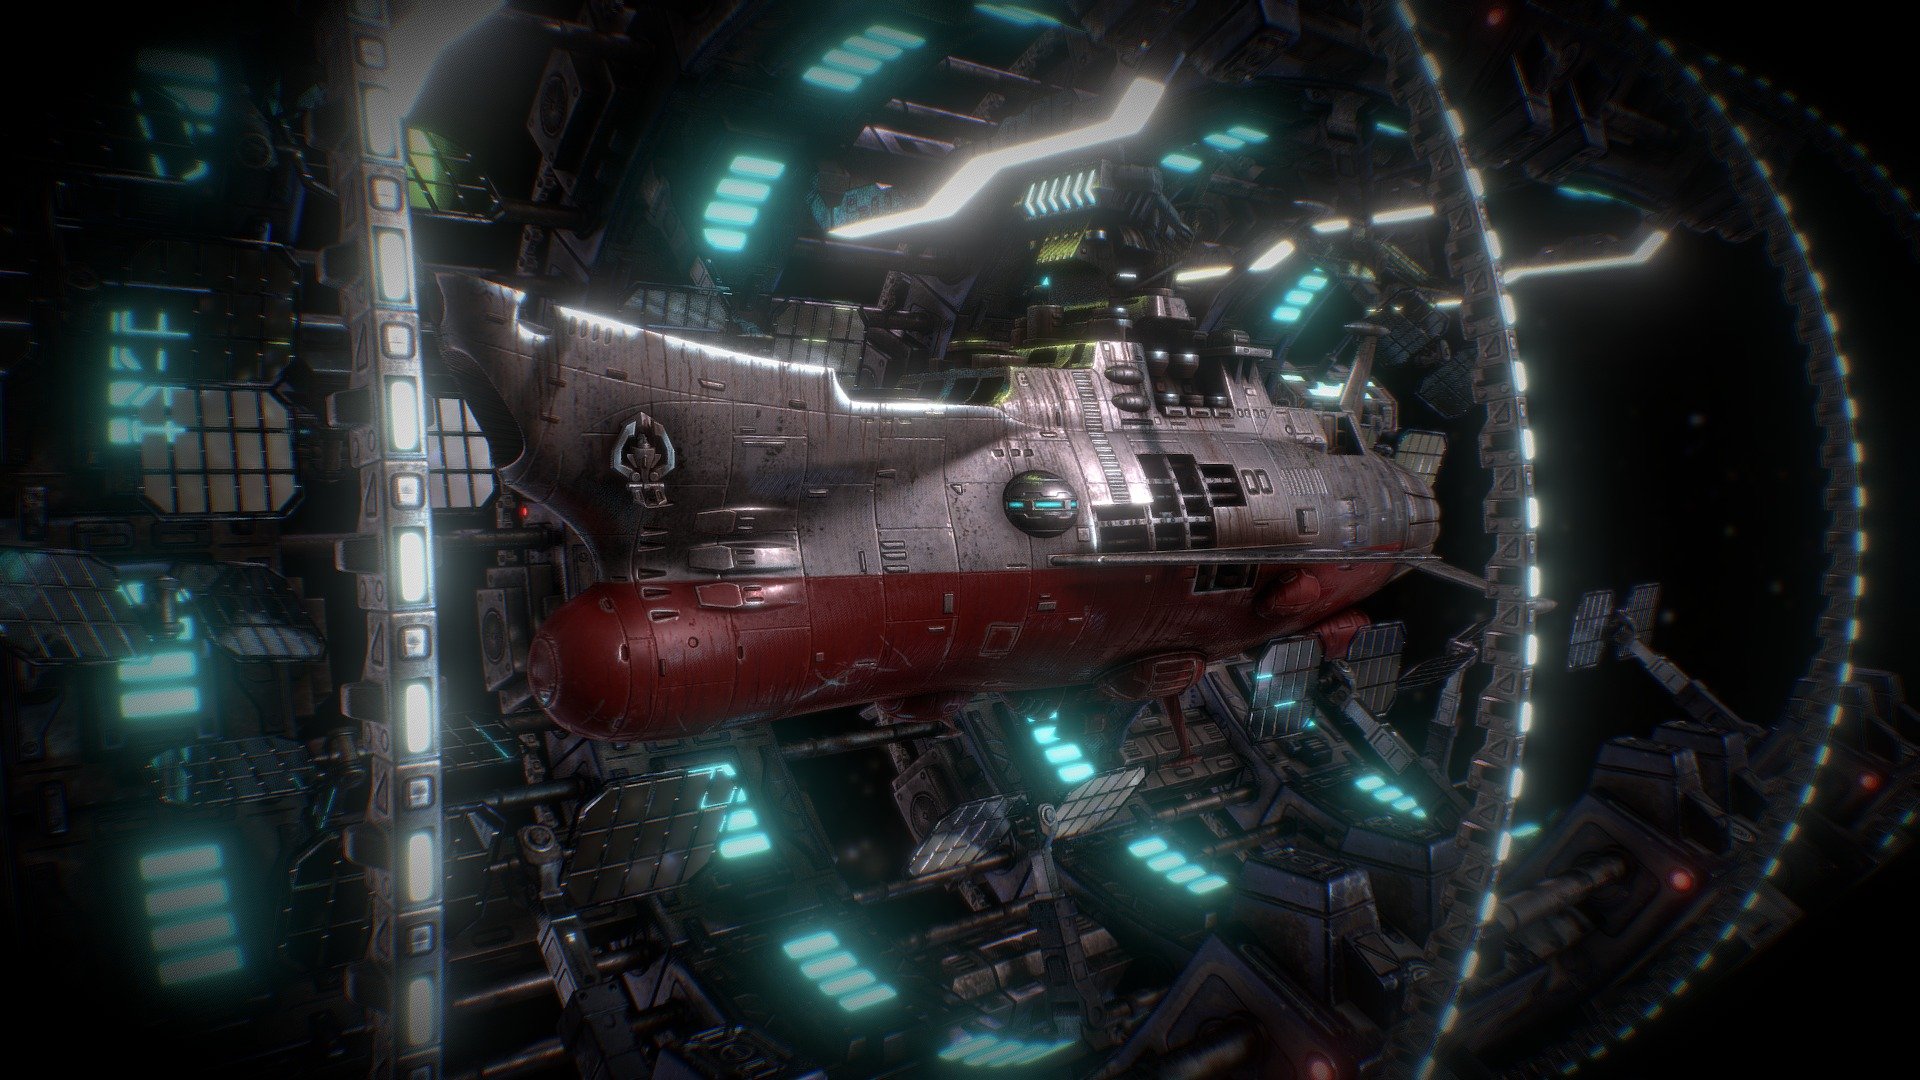 Space Hangar Yamato StarBlazer 2199 TOY - 3D model by giobiancoFB  (@giobiancoFB) [9bea99b]